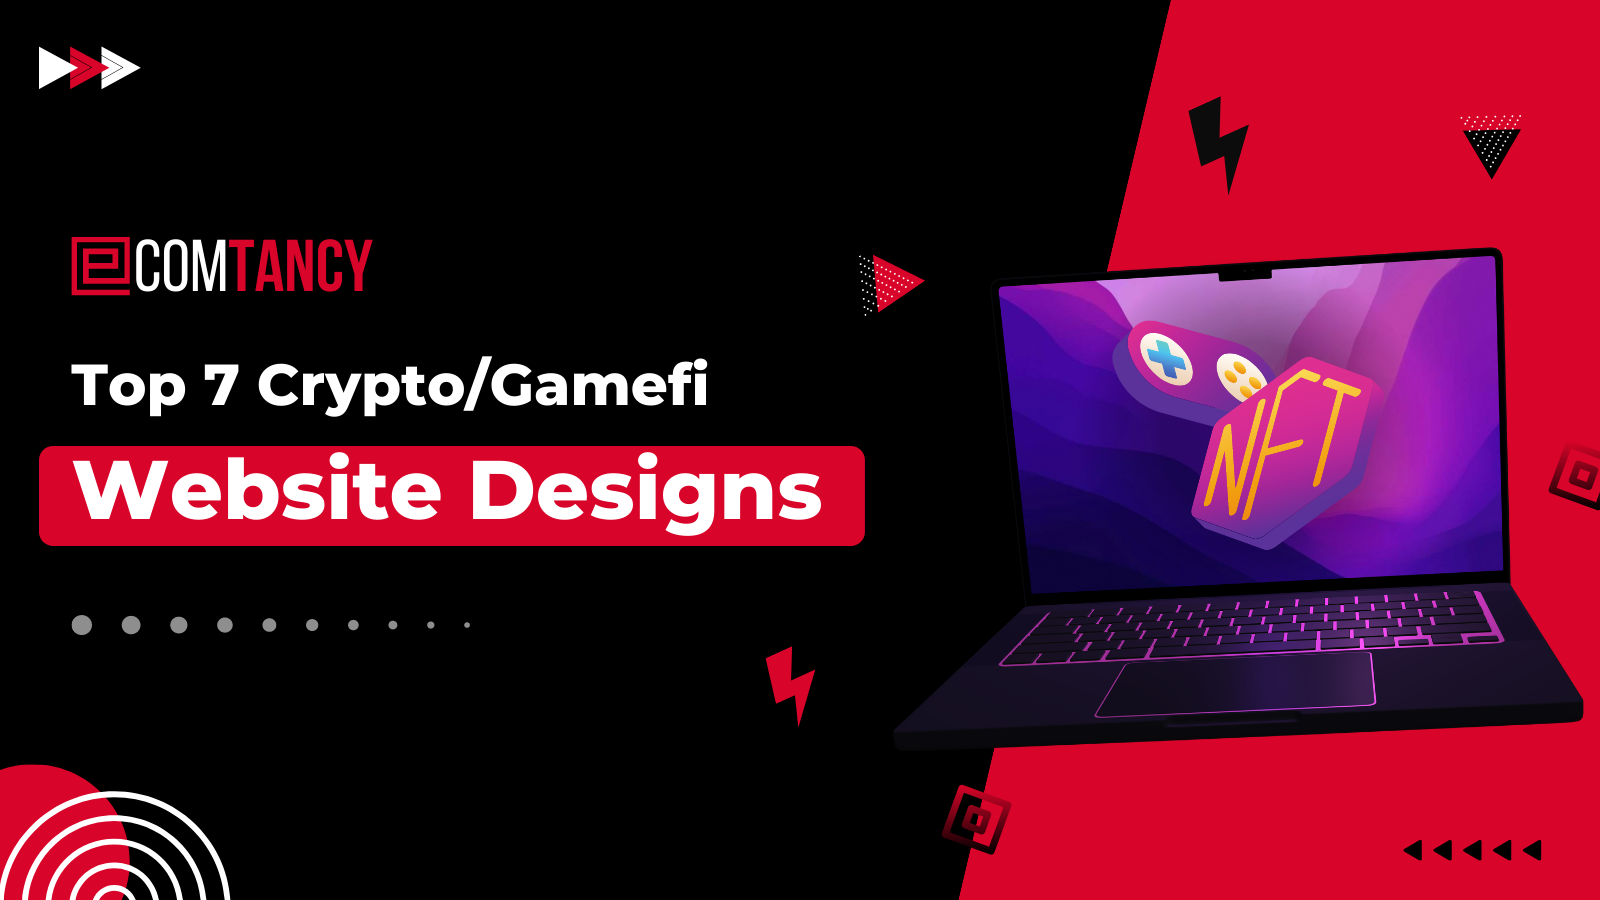 Top 7 Crypto/Gamefi Website Designs